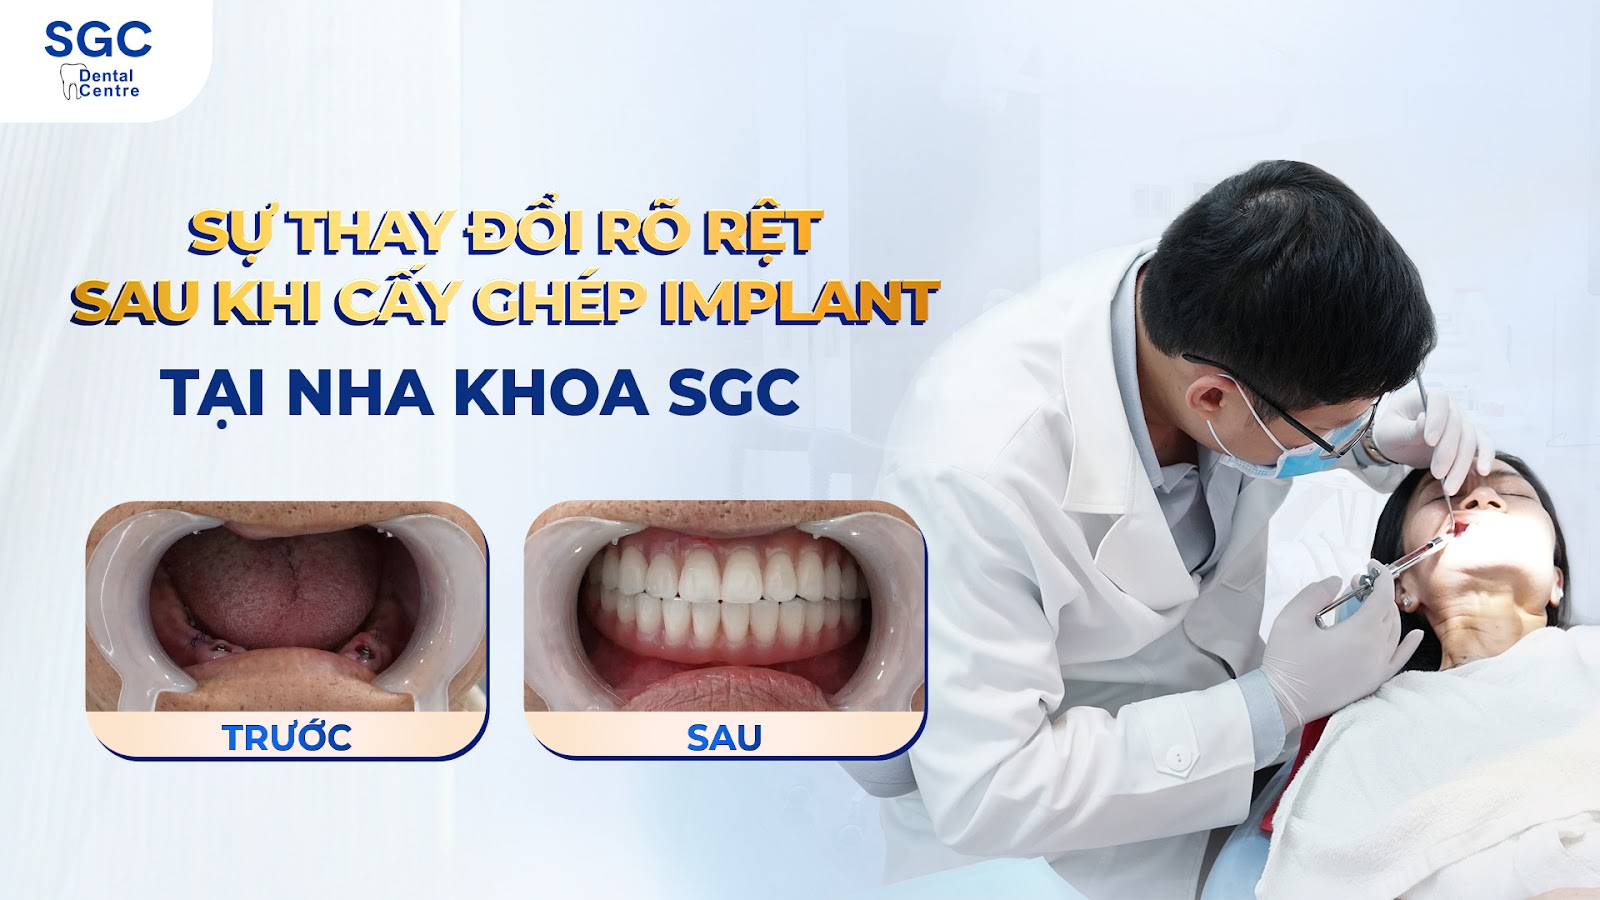 Dịch vụ trồng răng Implant uy tín TPHCM tại Nha Khoa SGC - 5